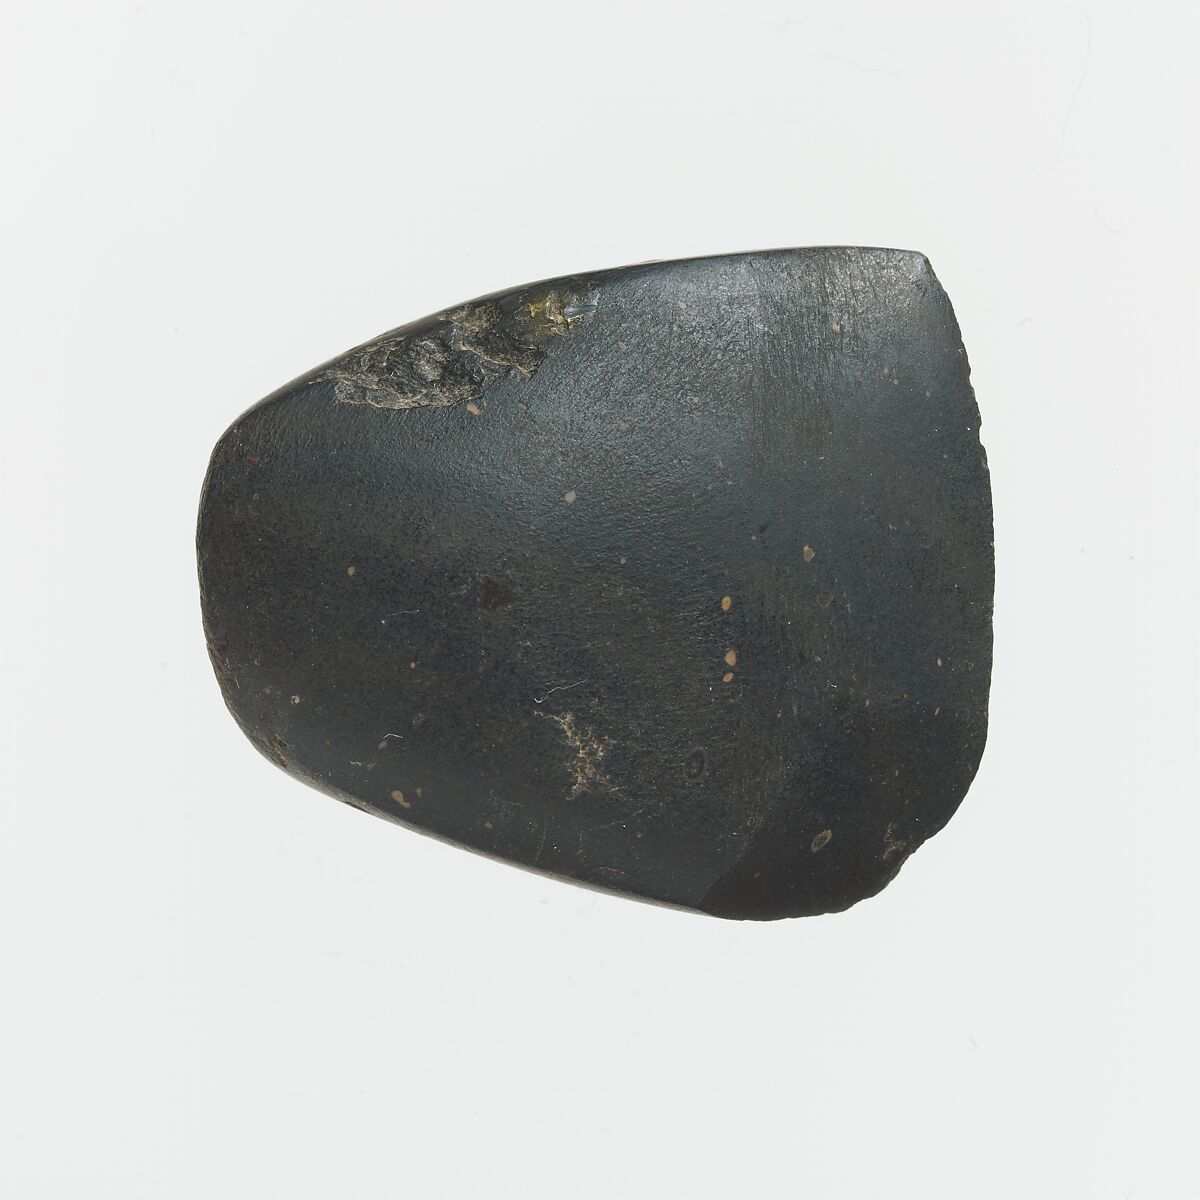 Small pisolitic bauxite axe, Haemaetite, Cretan 